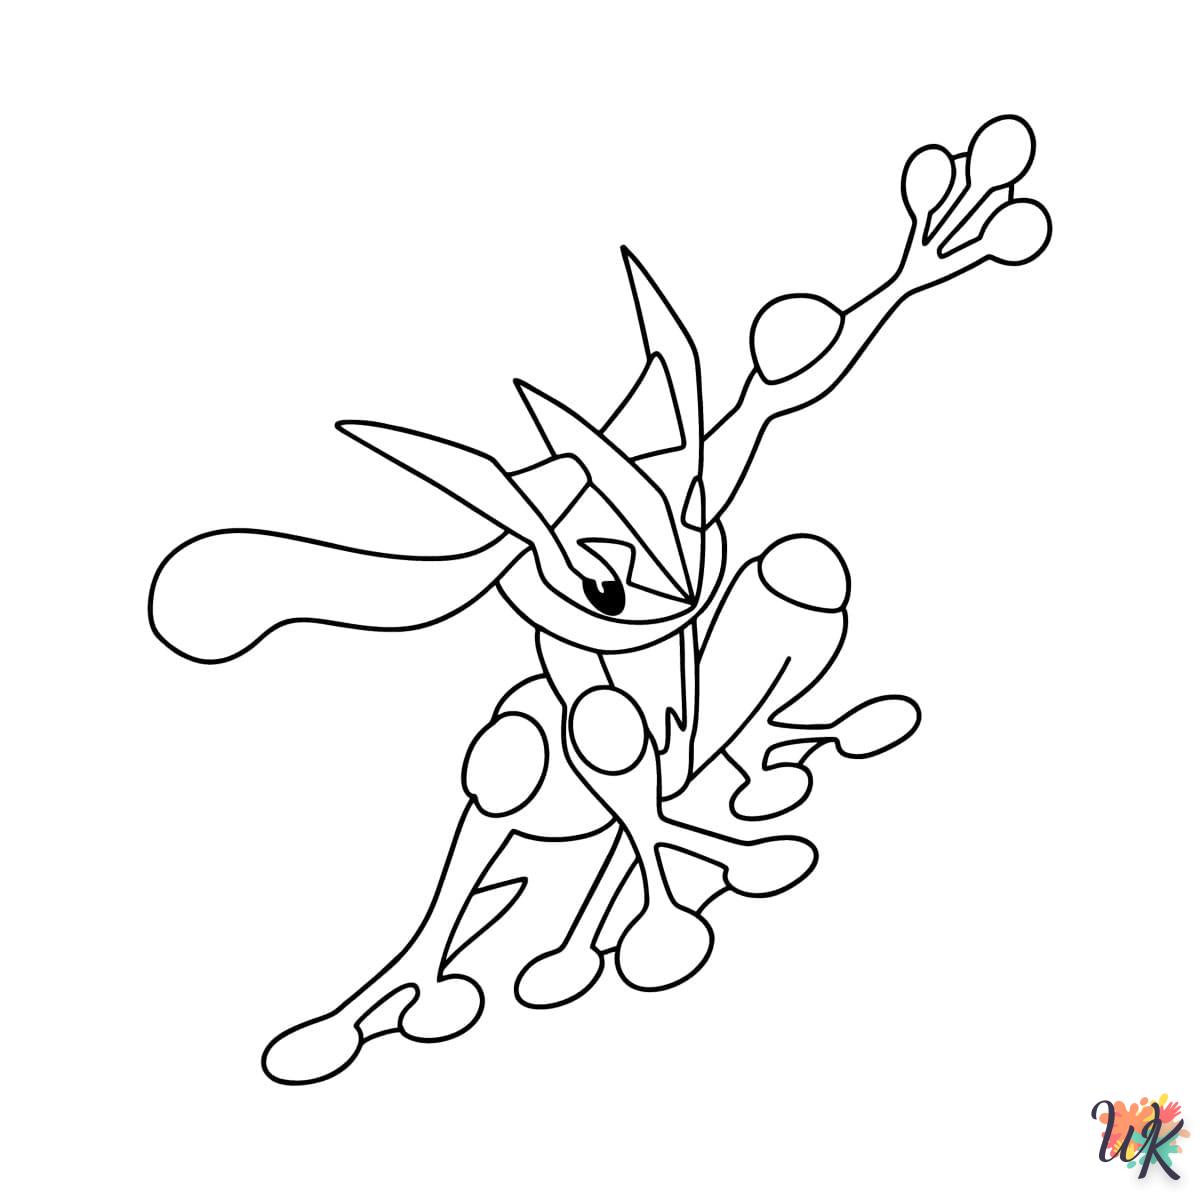 coloriage Pokémon Greninja  à imprimer pour enfant de 6 ans